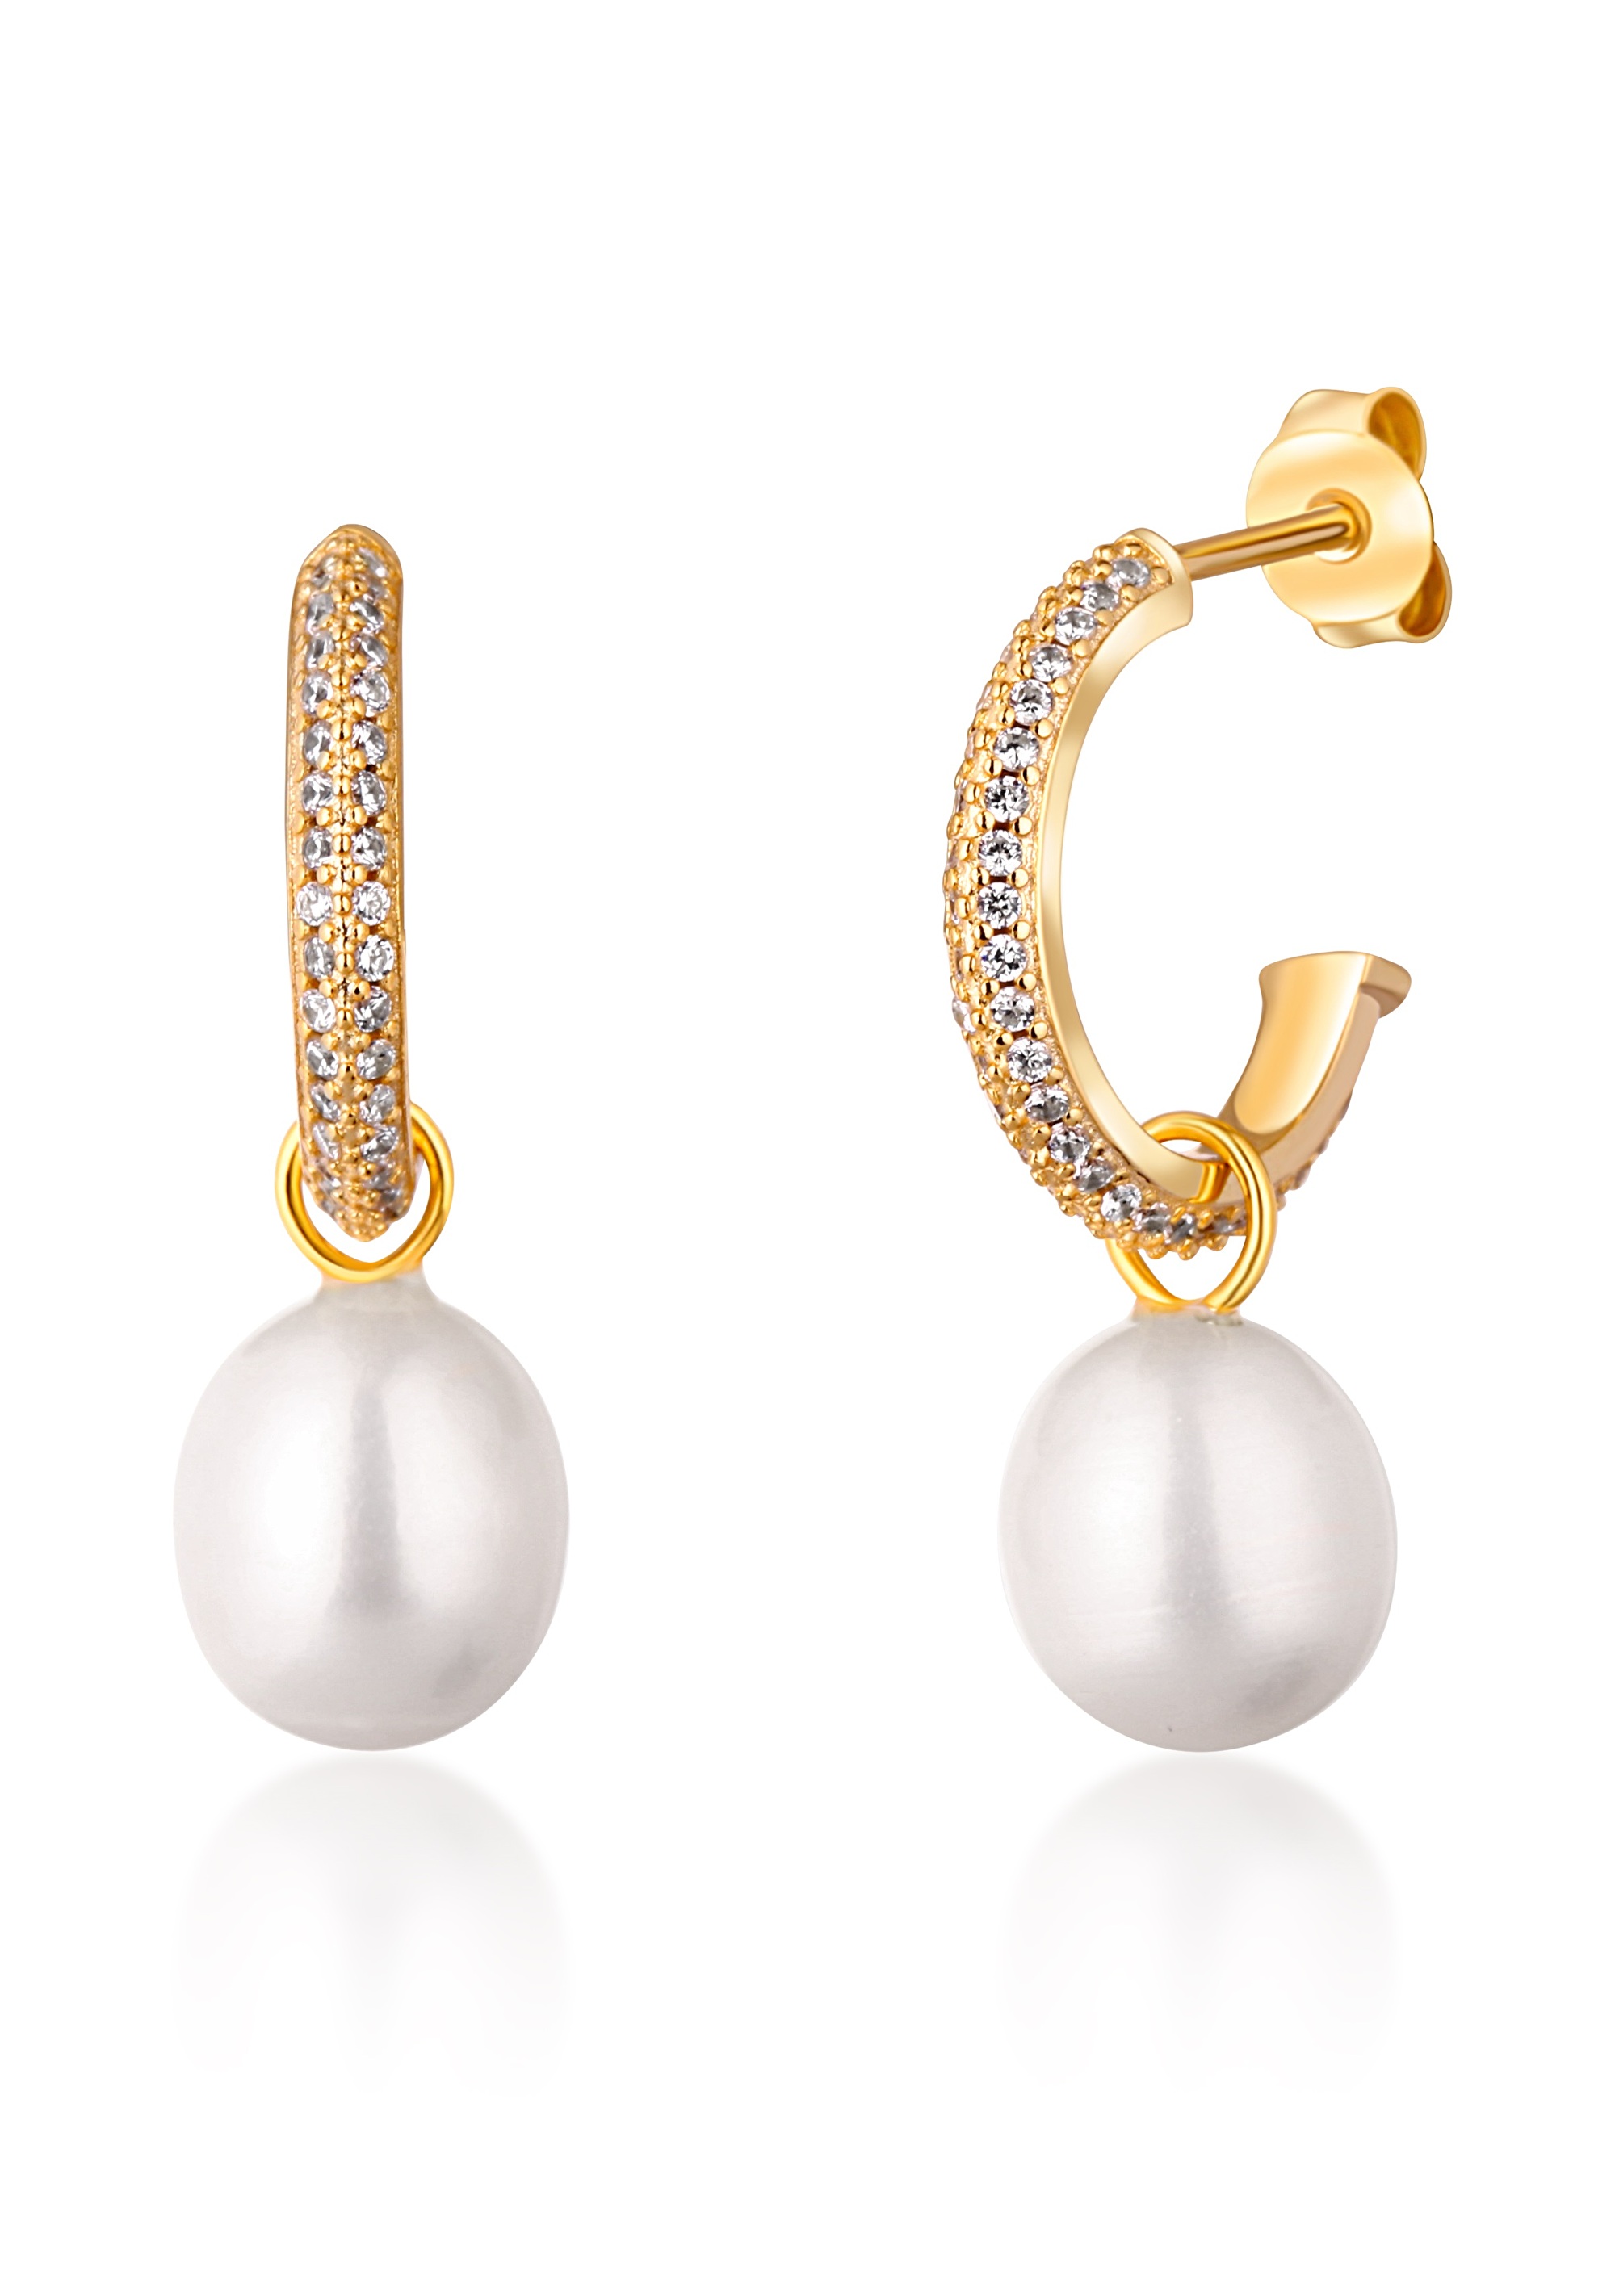 JwL Luxury Pearls Nádherné pozlátené náušnice kruhy s pravými perlami 2v1 JL0771